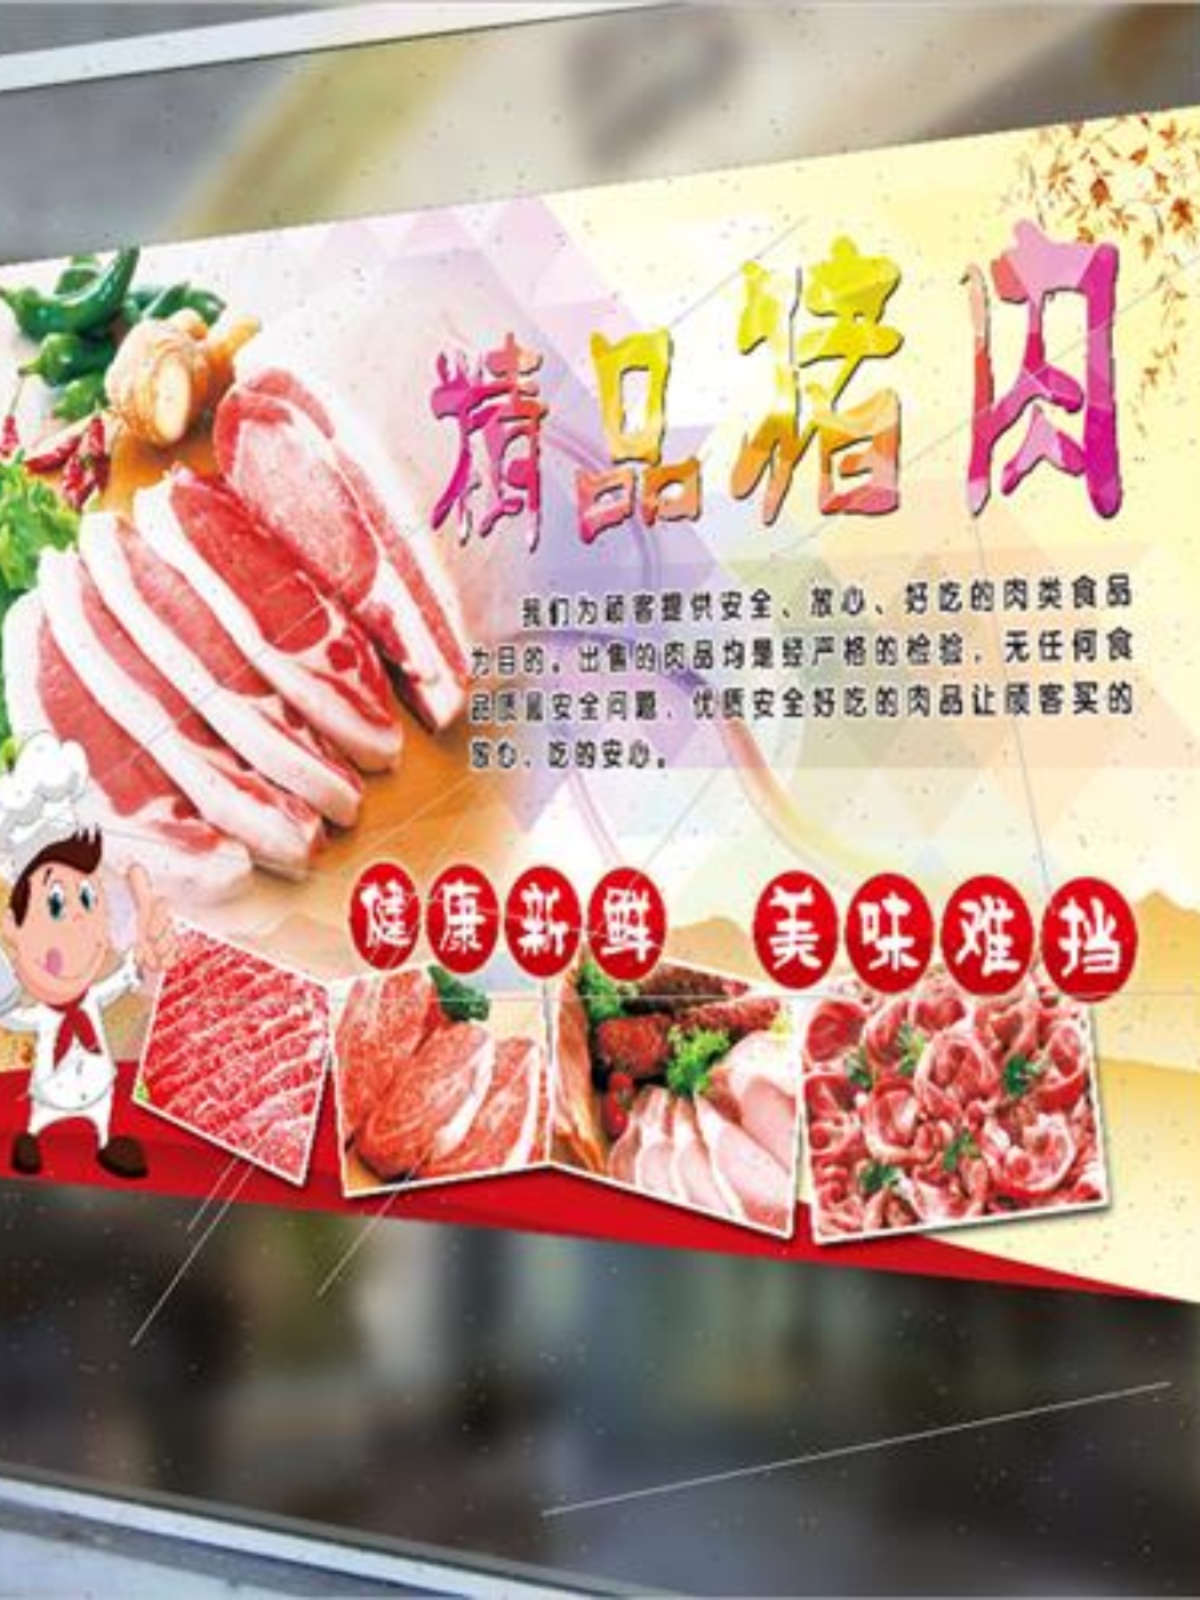 猪肉分割图超市生鲜店装饰背景墙贴土猪冷鲜肉海报图片广告贴纸画